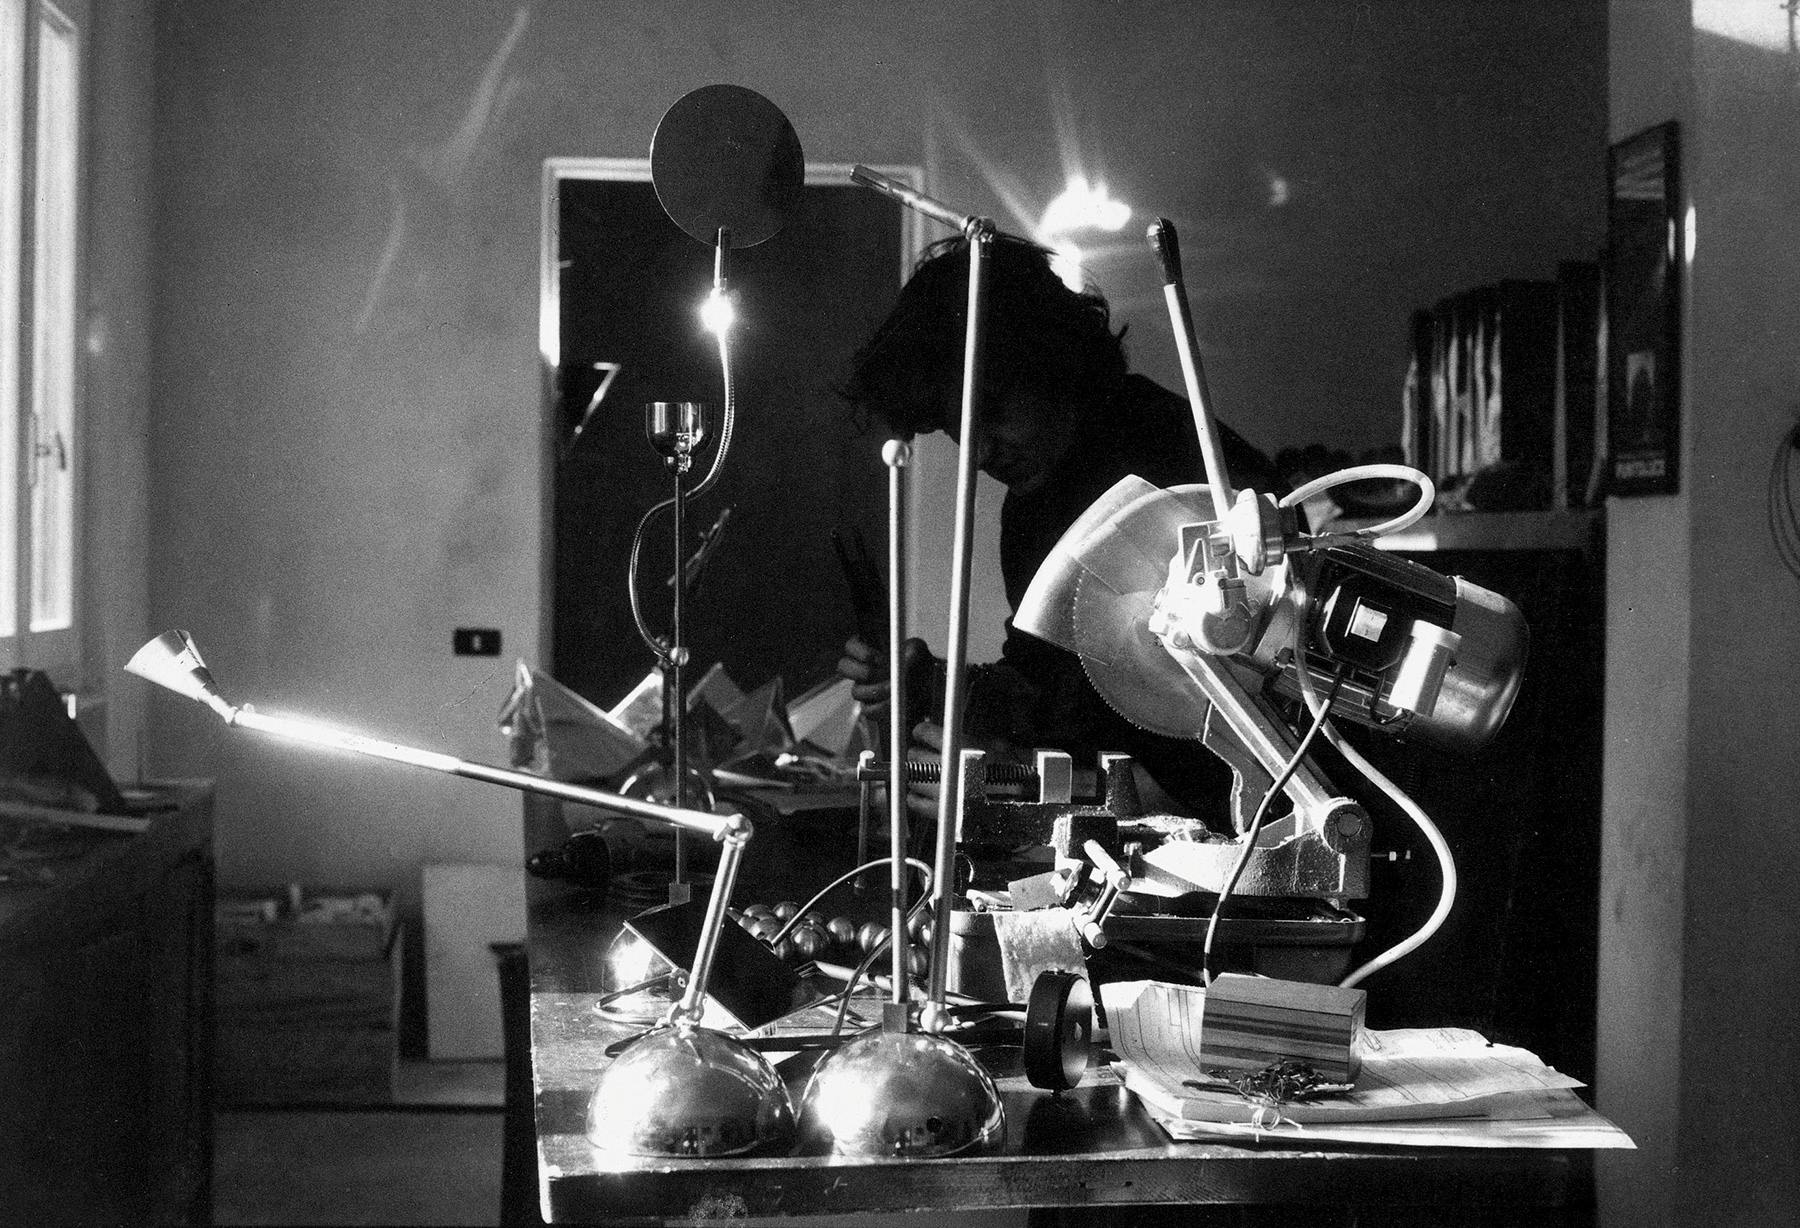 <p>Enzo Catellani startet sein Abenteuer mit der Schaffung der ersten Lampen aus dem Katalog „Oggetti senza Tempo“, wobei er allem voran die Möglichkeit der Interaktion mit dem Objekt-Subjekt Lampe valorisiert.</p>
